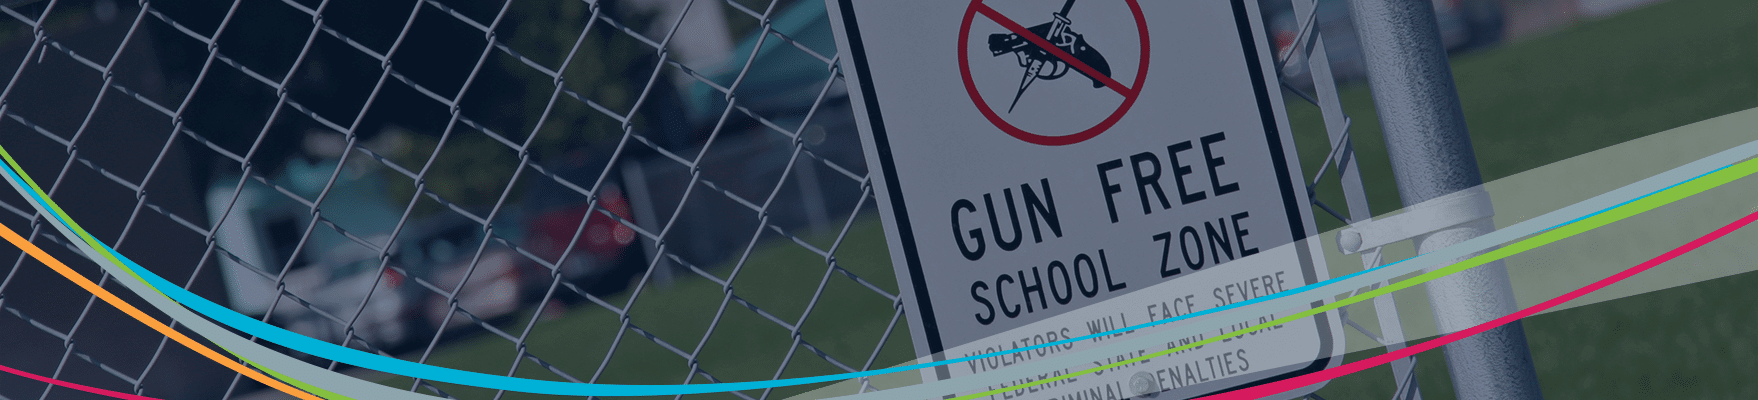 Våbenfri zoneskilt på hegn Skolevoldsforebyggende overskrift